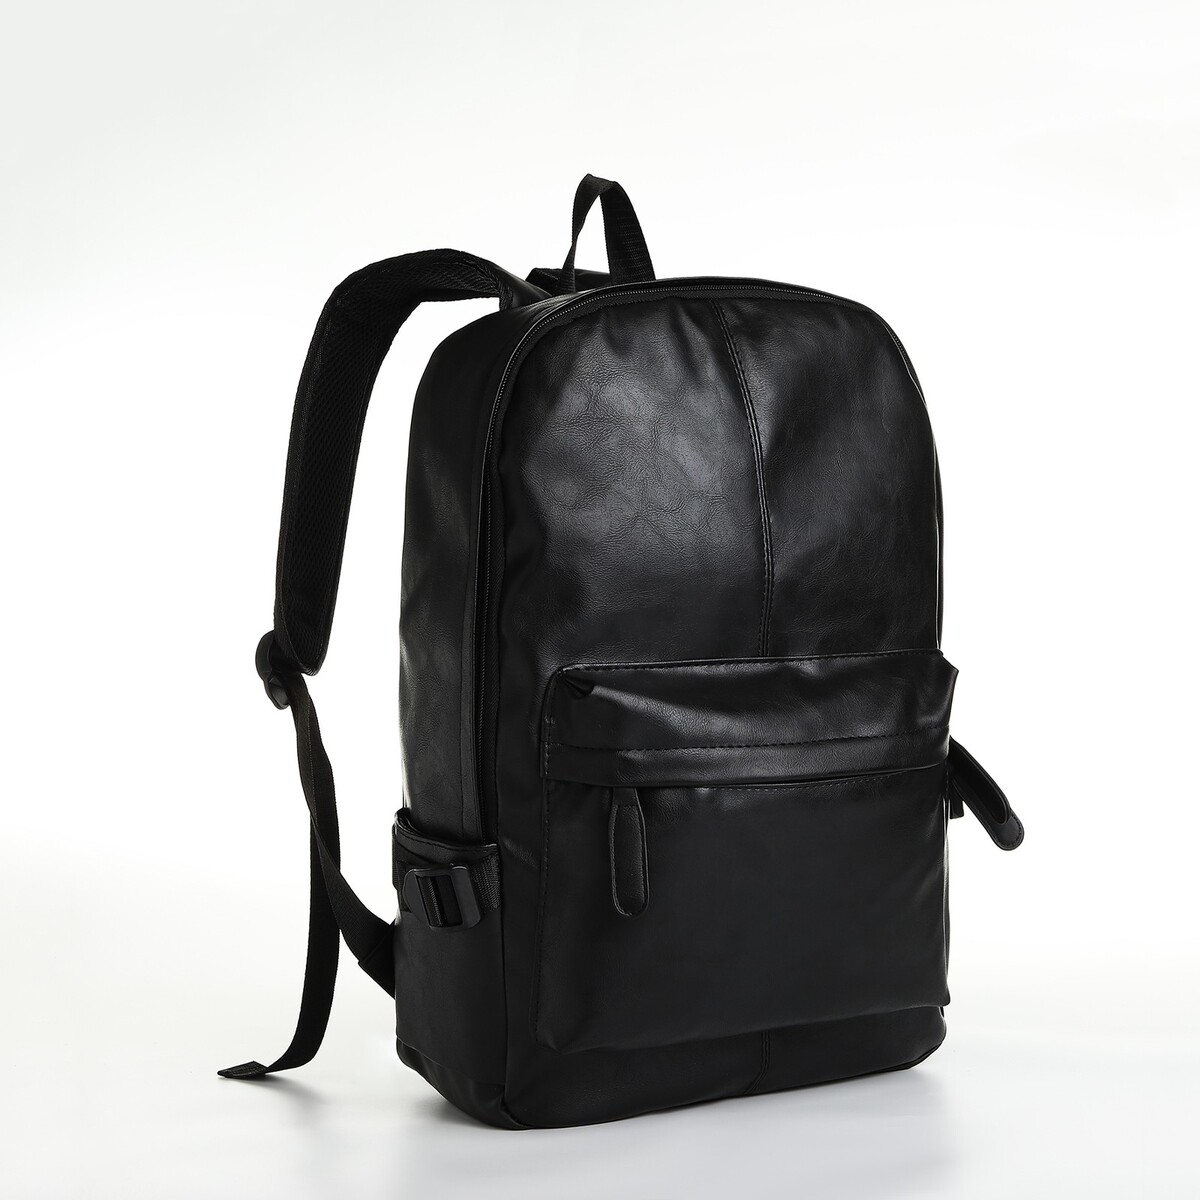 Рюкзак городской из искусственной кожи на молнии, 3 кармана, цвет черный рюкзак городской из текстиля на молнии 4 кармана